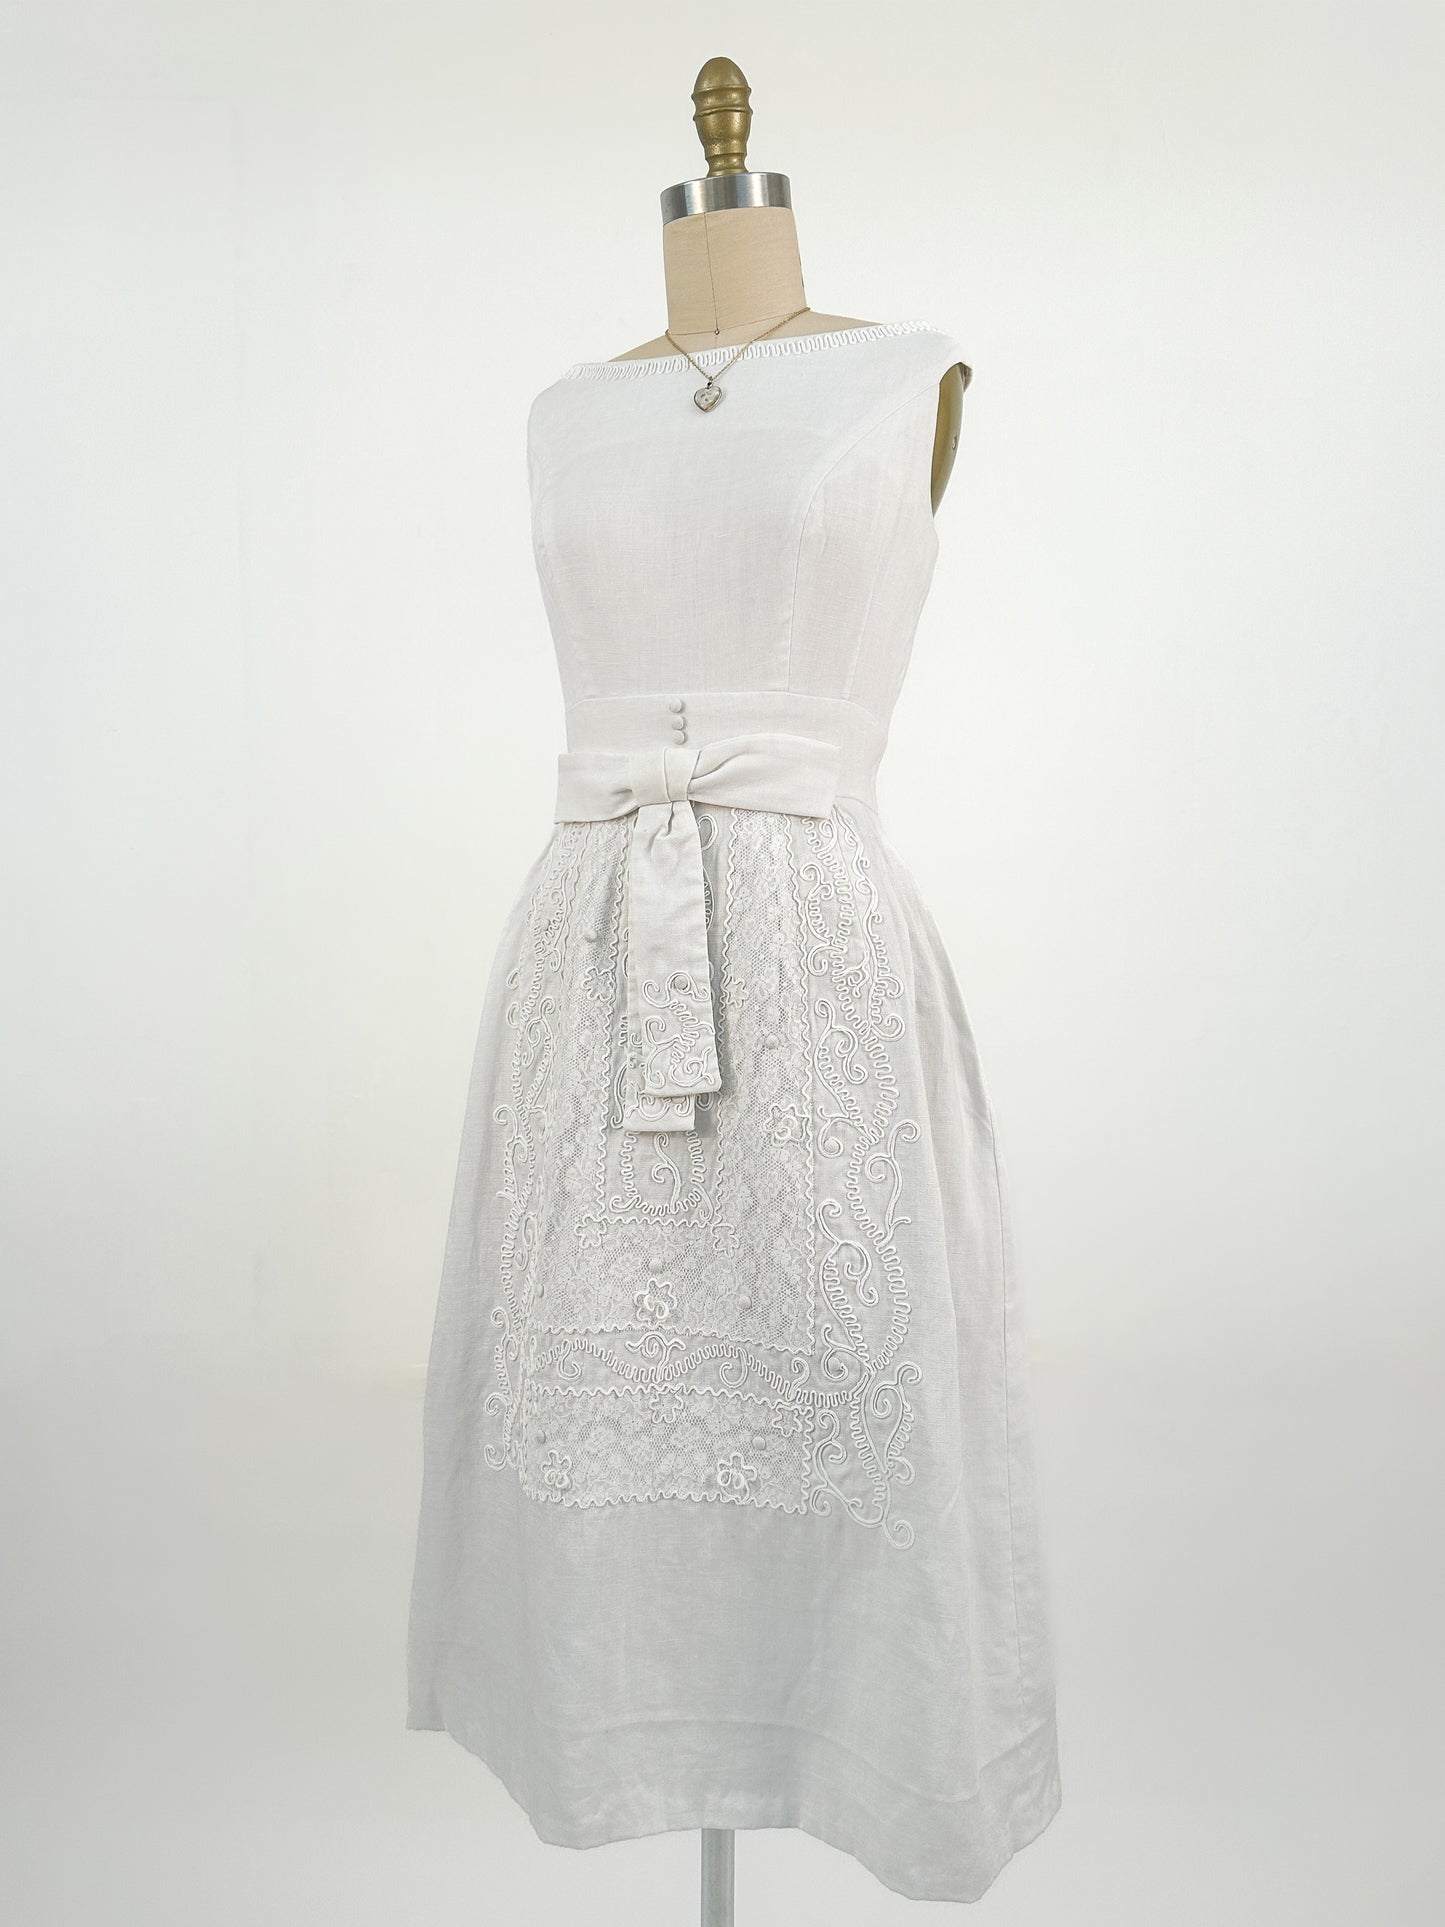 1950s Crisp White Linen Sundress with Decorative Skirt / Waist 26